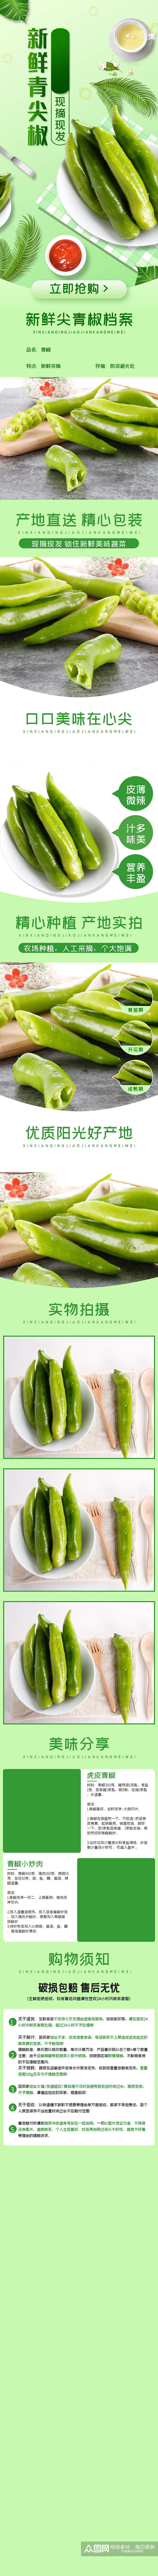 蔬菜水果青尖椒辣椒西瓜芒果详情素材